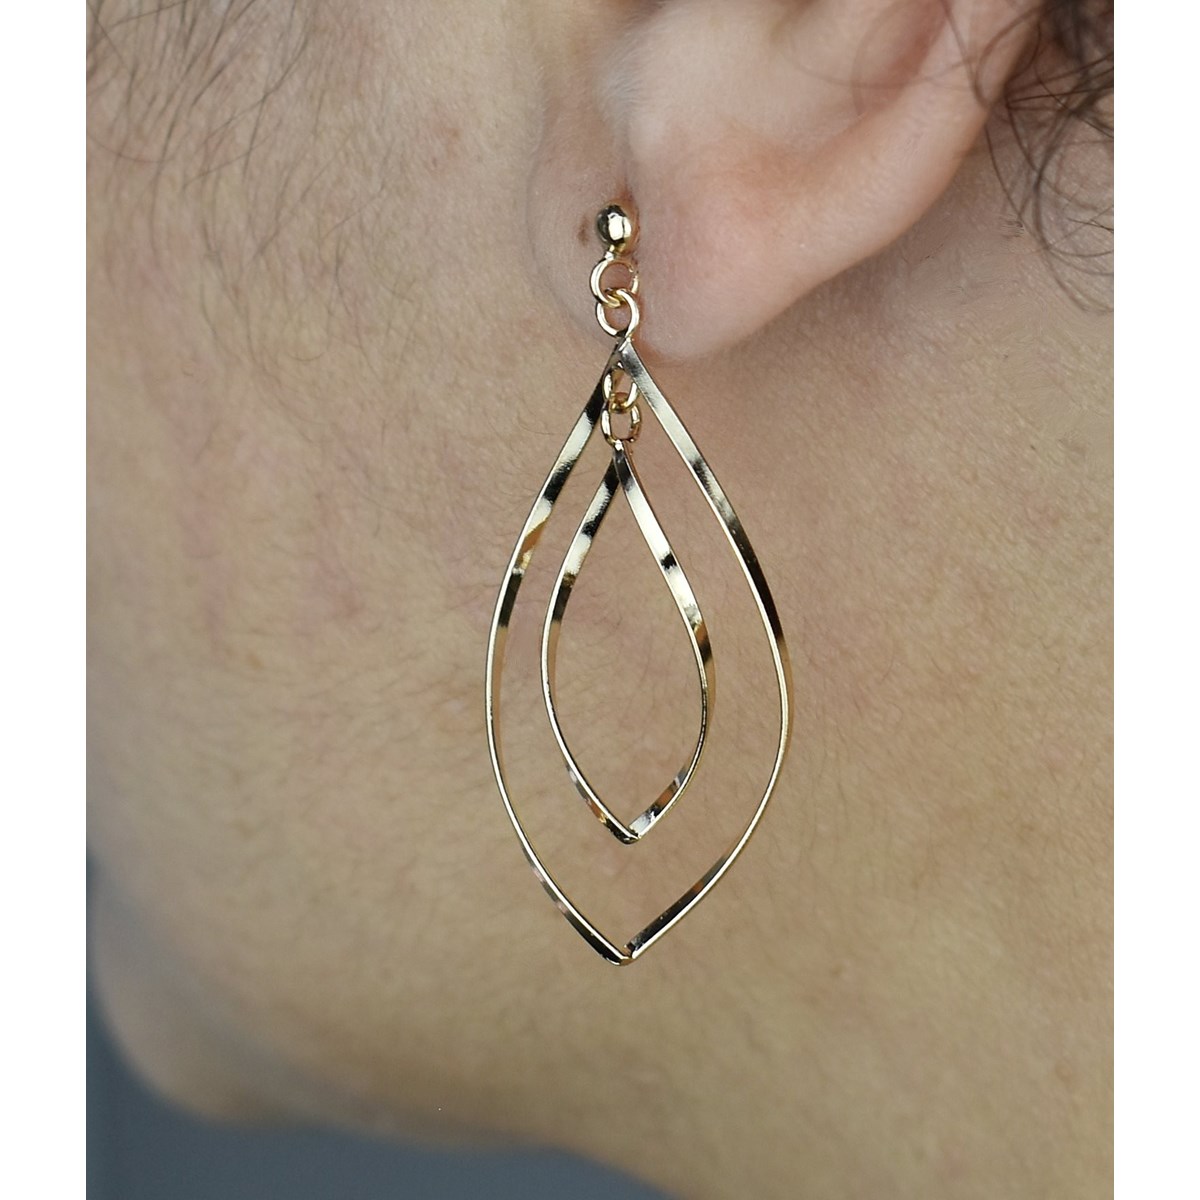 Boucles d'oreilles 2 losanges ovales pendantes Plaqué OR 750 3 microns - vue 2